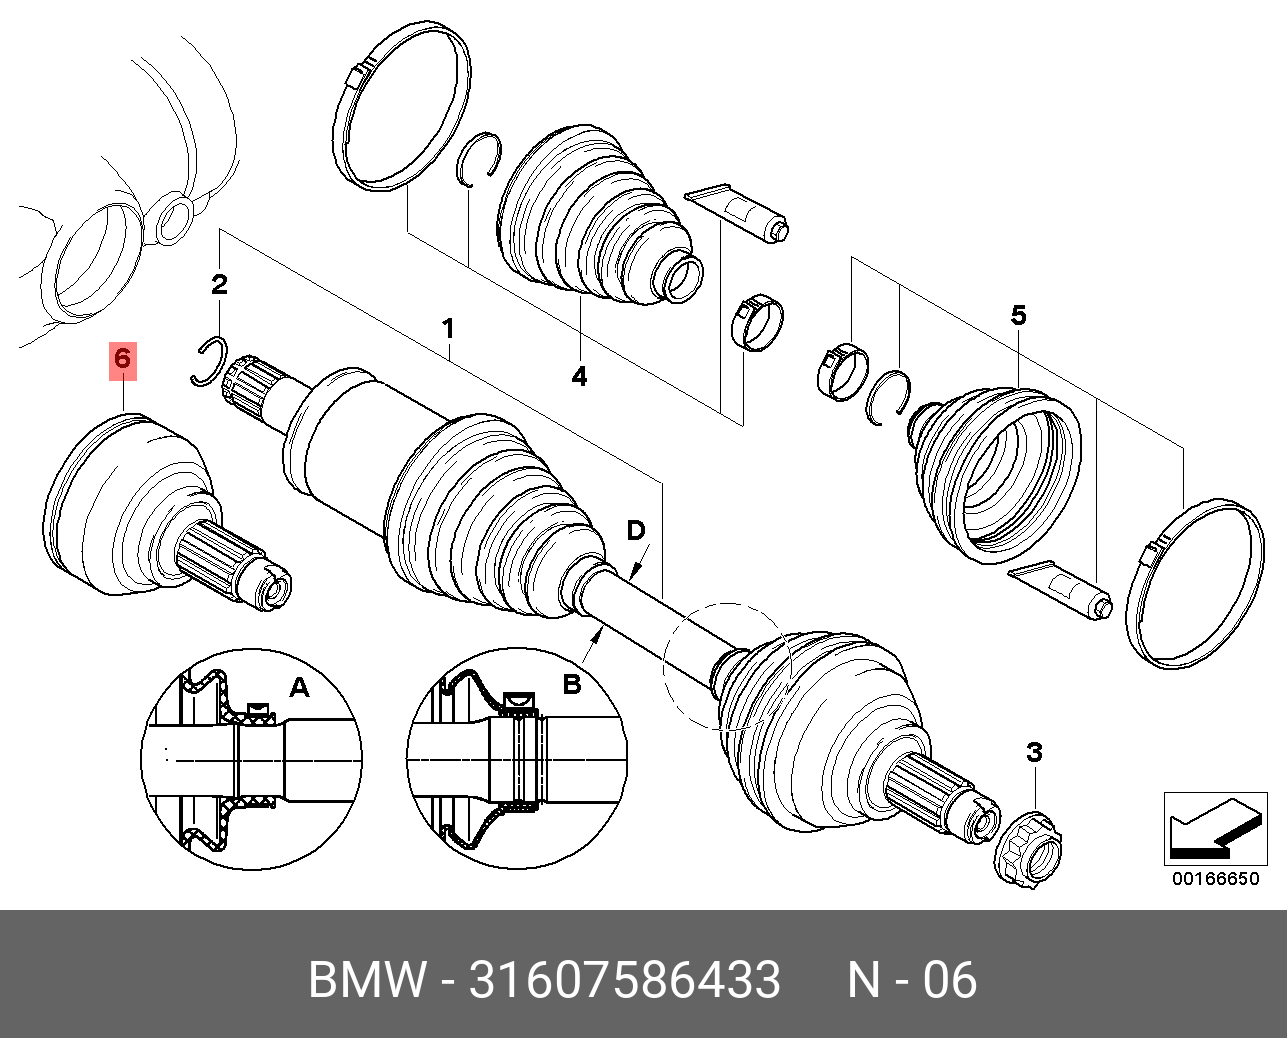 Х5 задний привод. Привод передний БМВ х5 е70. BMW x5 e70 передний привод. Привод передний BMW x3 e83. Передний левый привод BMW x5 e53.